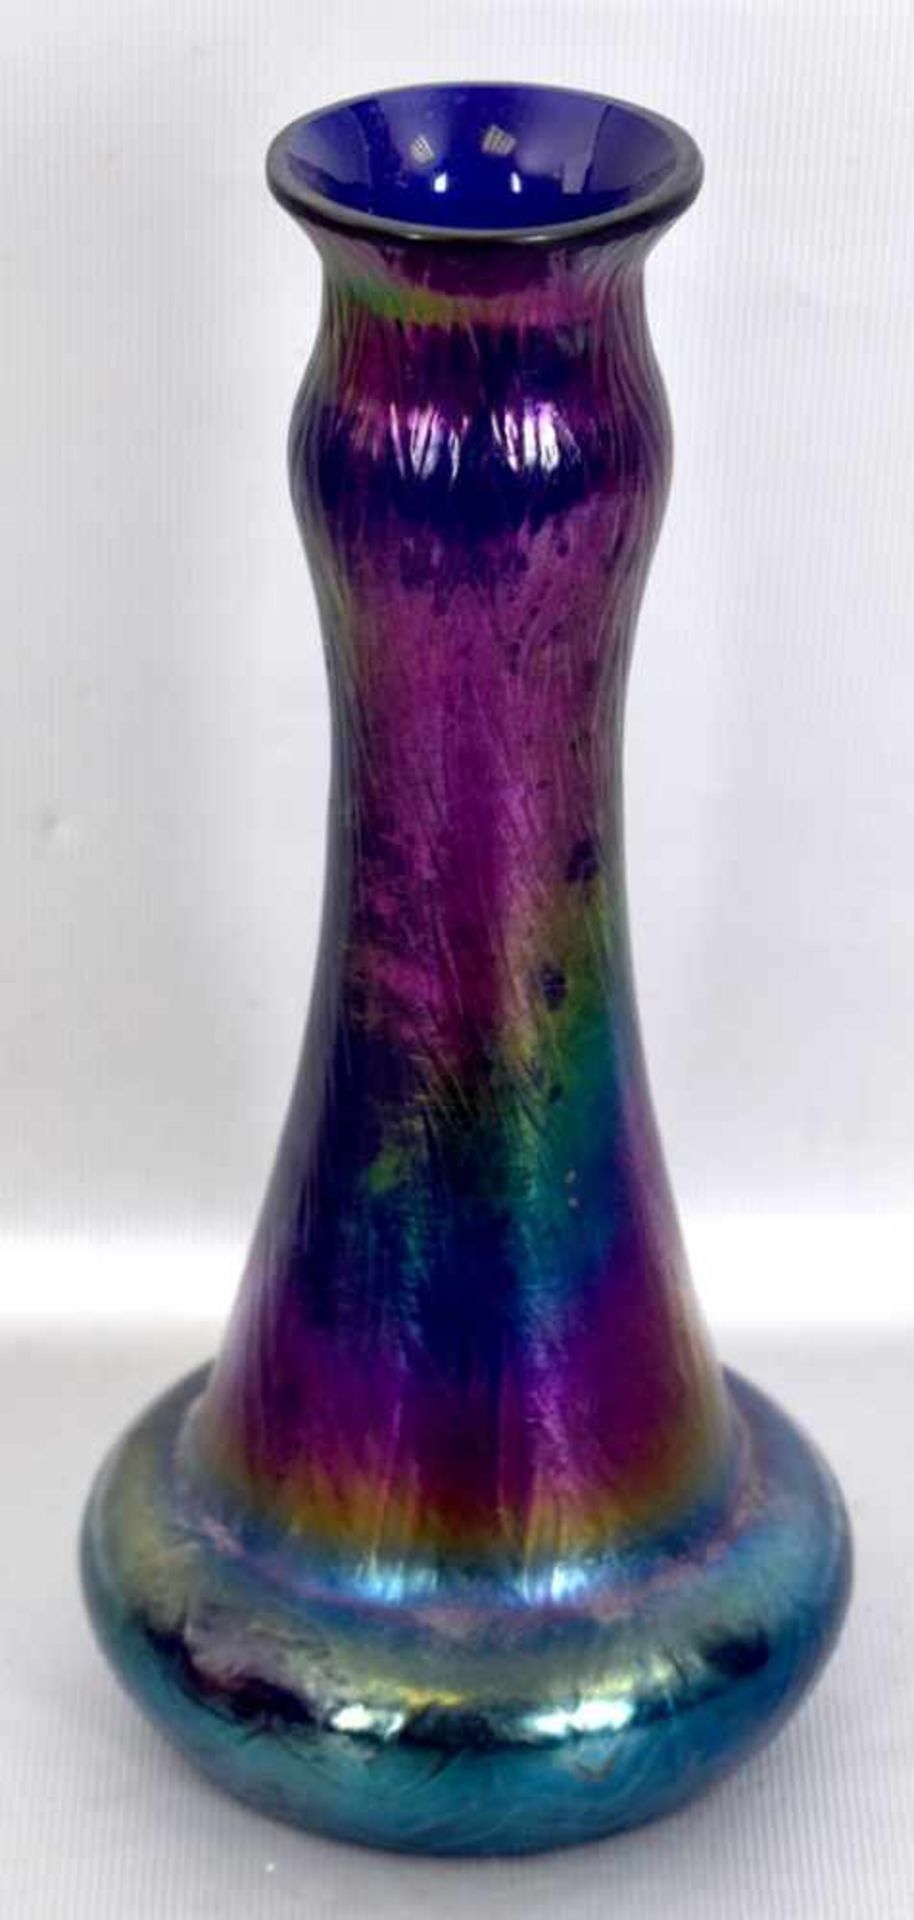 Jugendstil-Vase farbl. Glas, bunt changierend, runder Fuß, nach oben verjüngend, H 20 cm, wohl FM